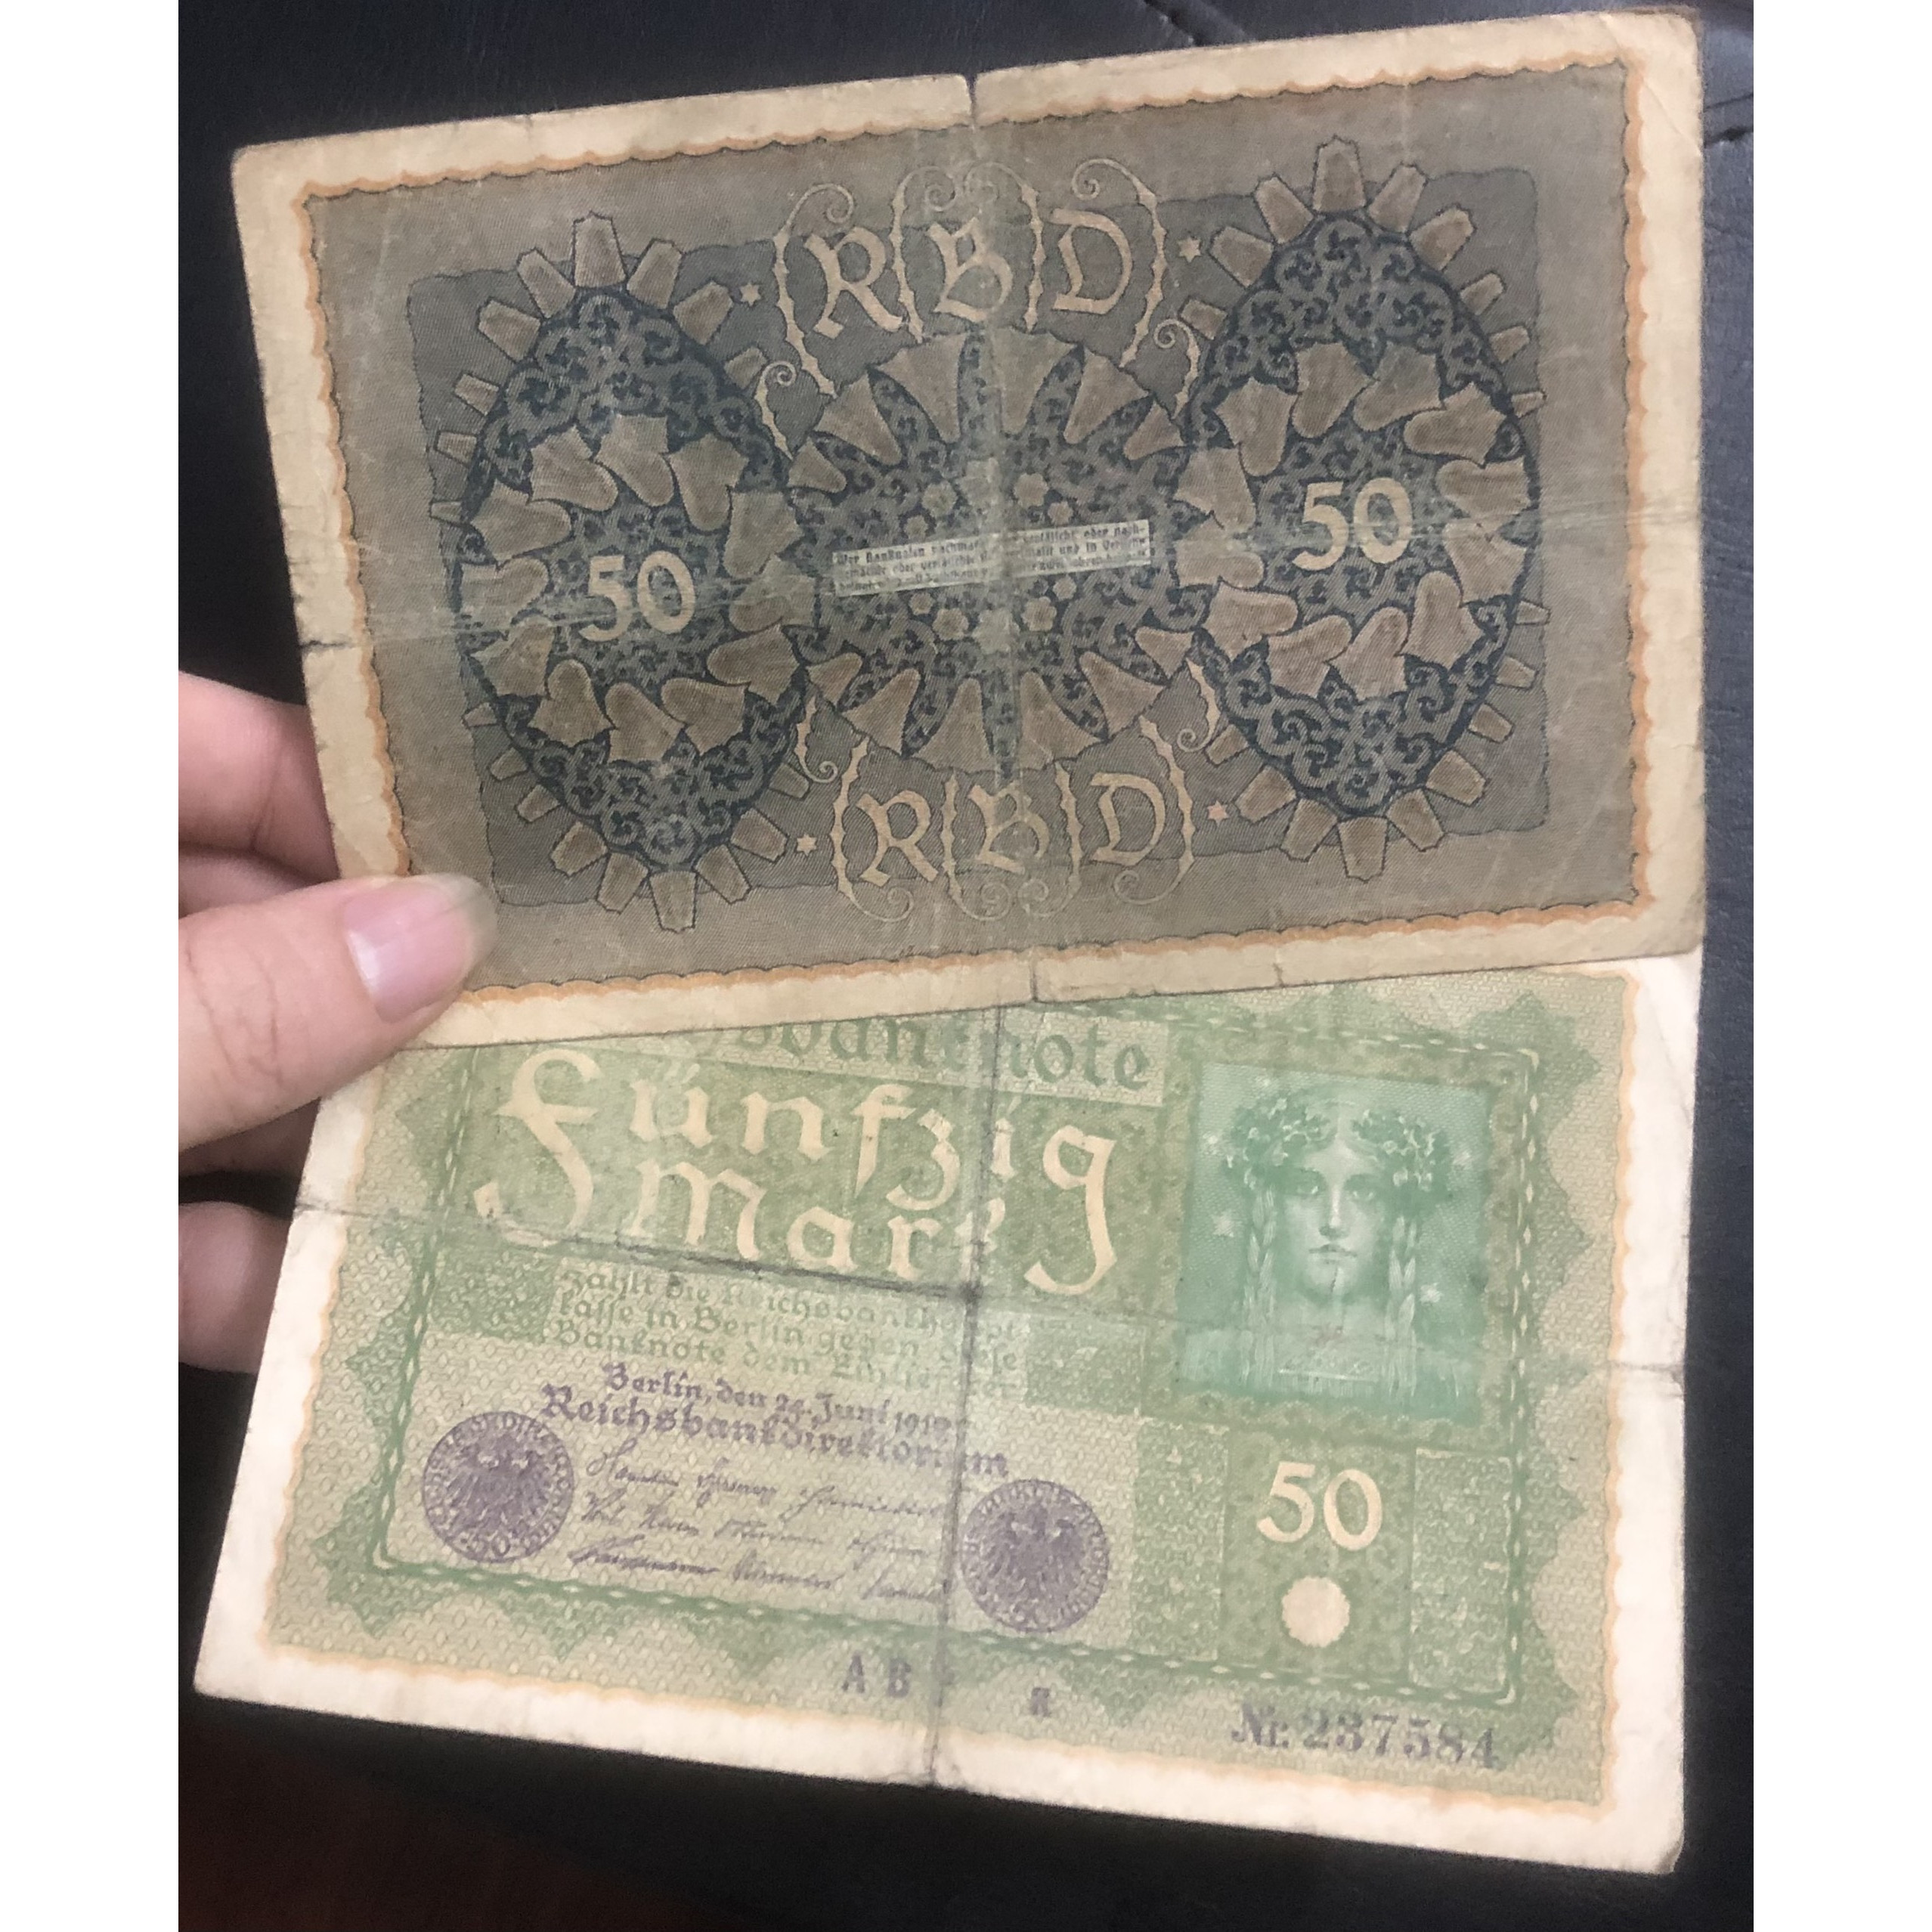 Tiền Đức 50 mark 1912 sưu tầm hơn 100 năm tuổi, có phơi bảo quản sang trọng đi kèm